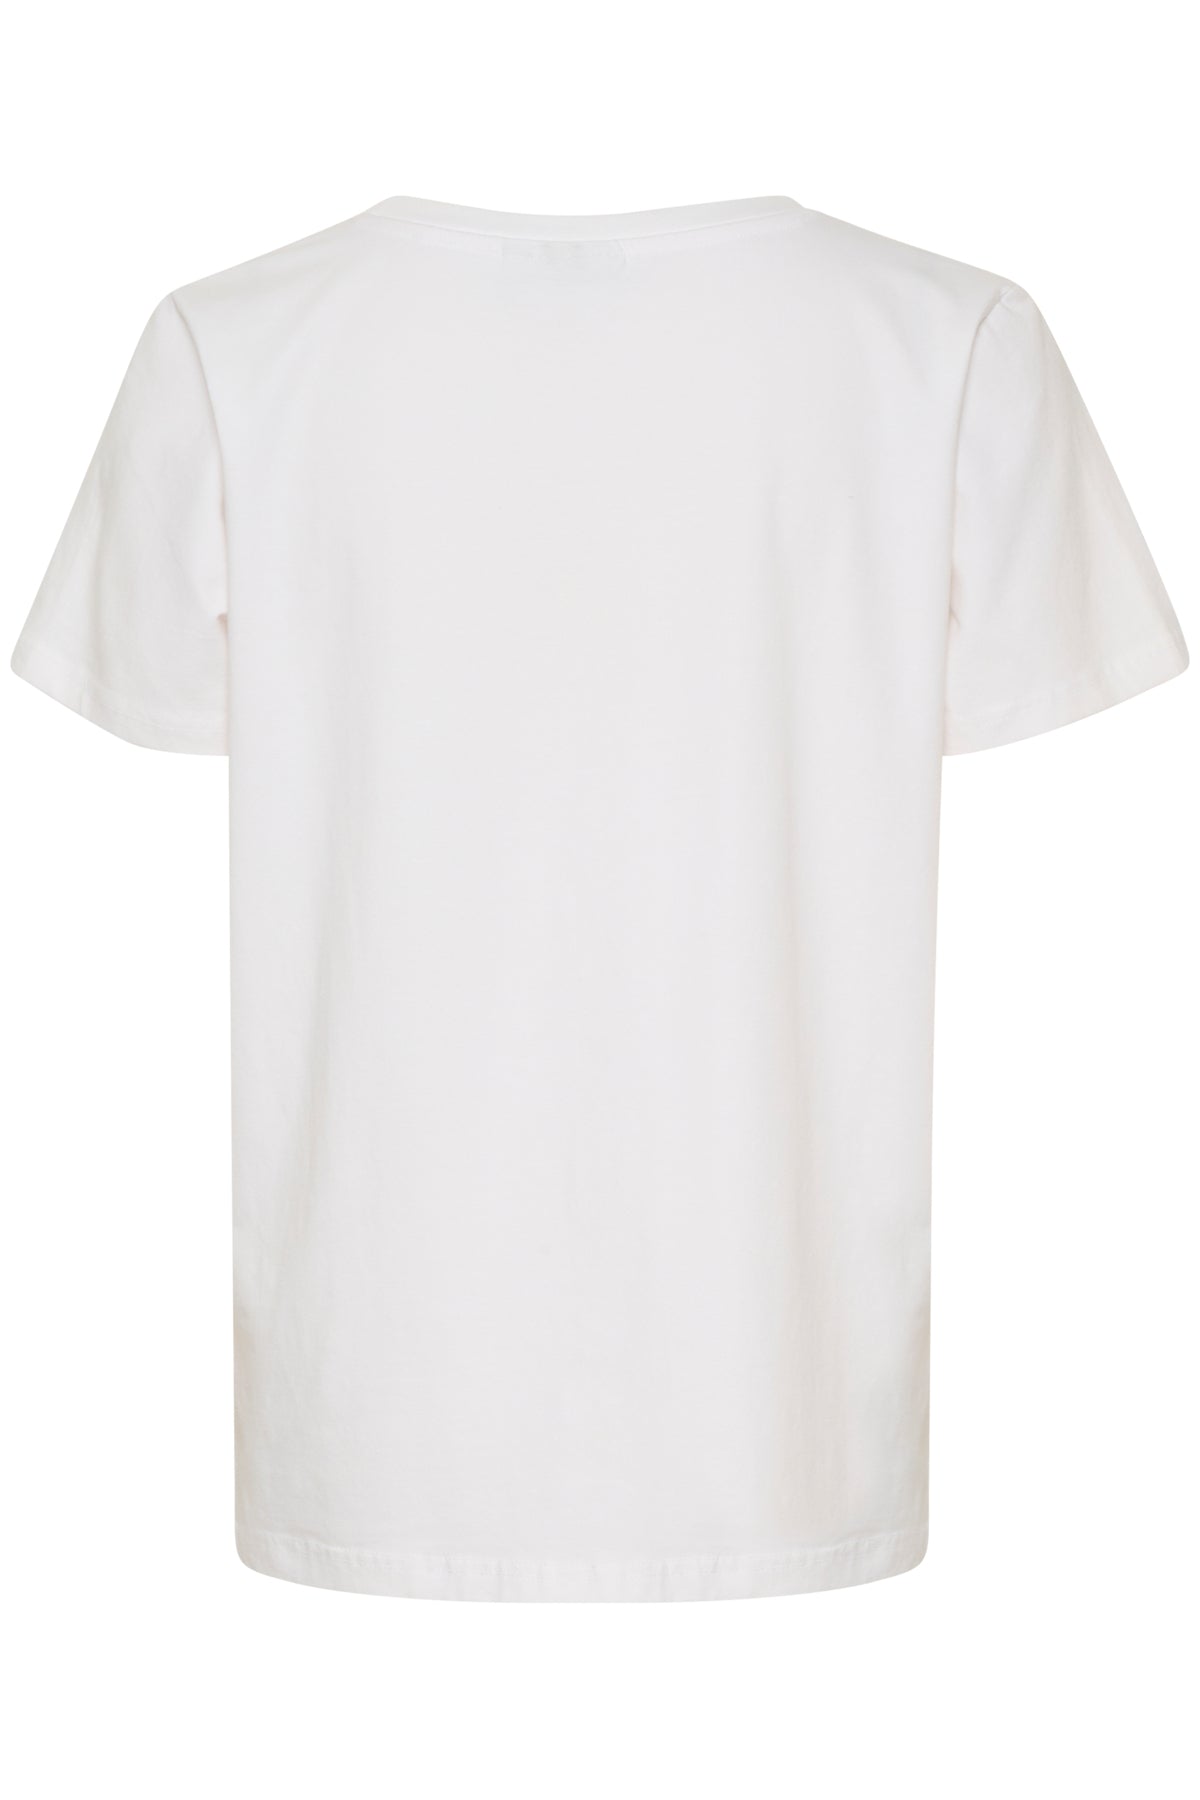 Fransa Zashoulder 1 T-shirt, White